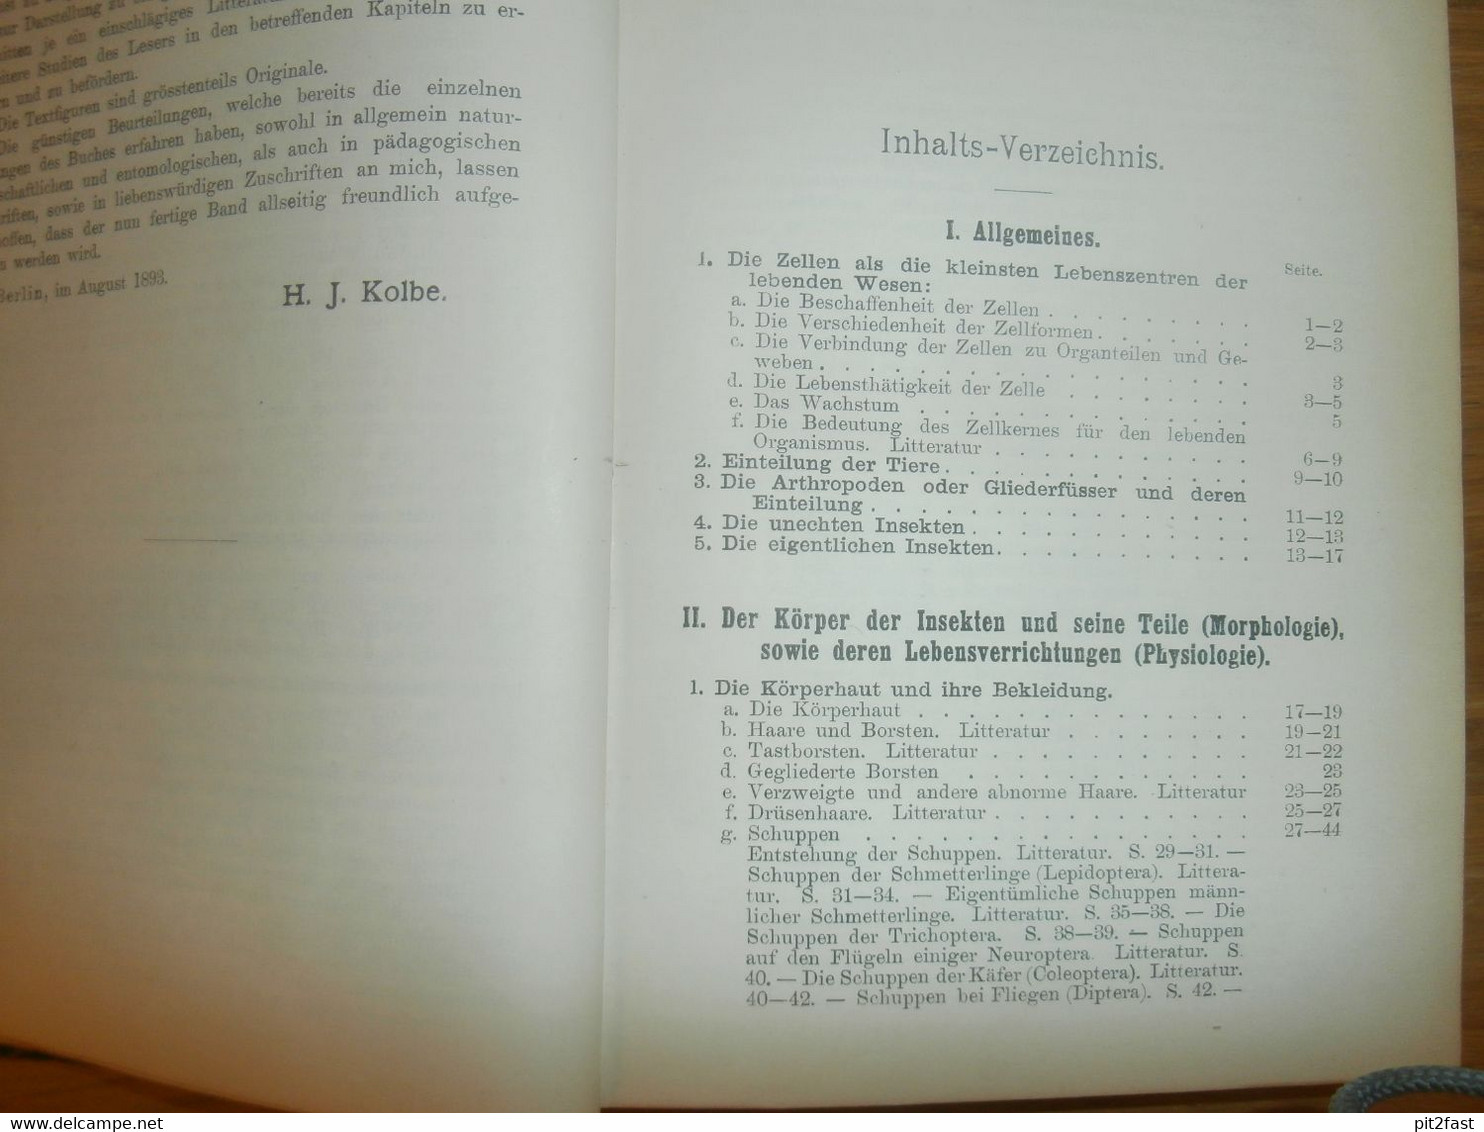 Einführung In Die Kenntnis Der Insekten , 1893 , H.J. Kolbe , Kgl. Museum Der Naturkunde , Insektenkunde ,Entomologie !! - Ediciones Originales